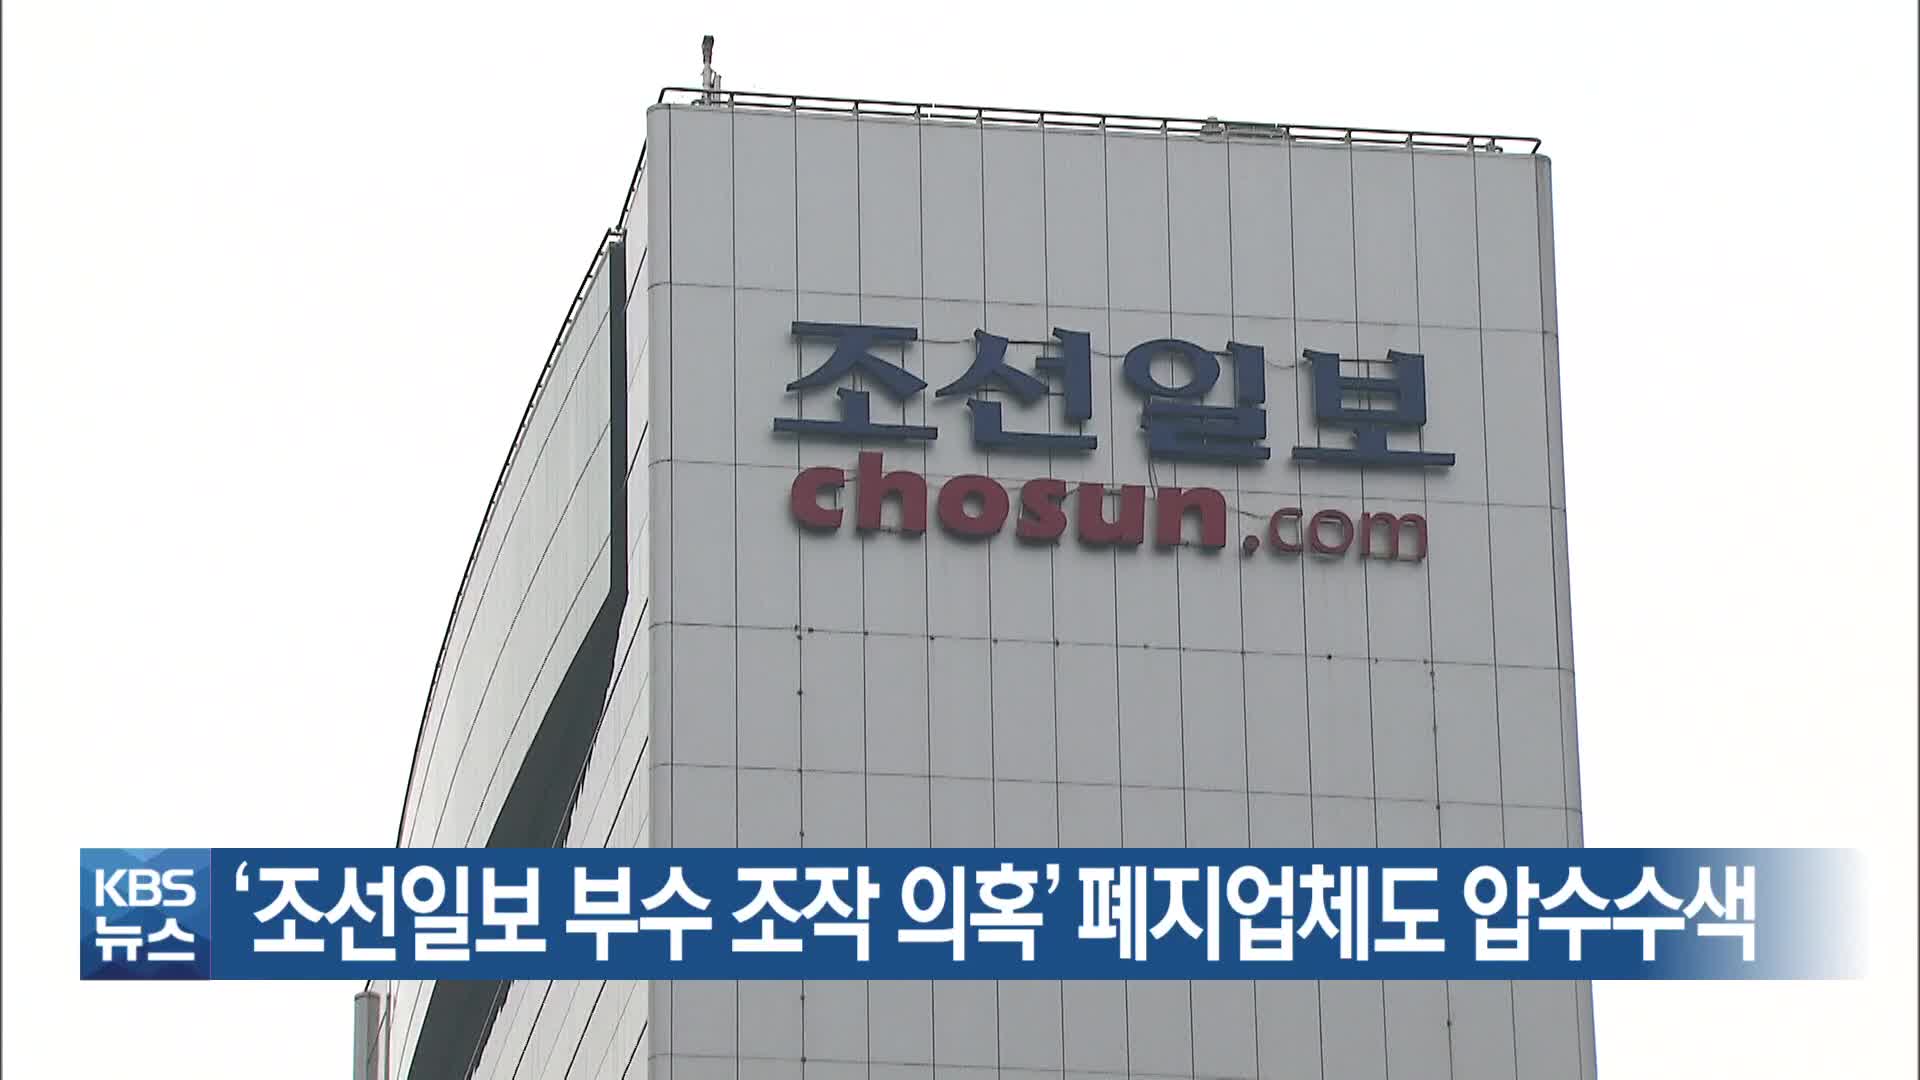 ‘조선일보 부수 조작 의혹’ 폐지업체도 압수수색